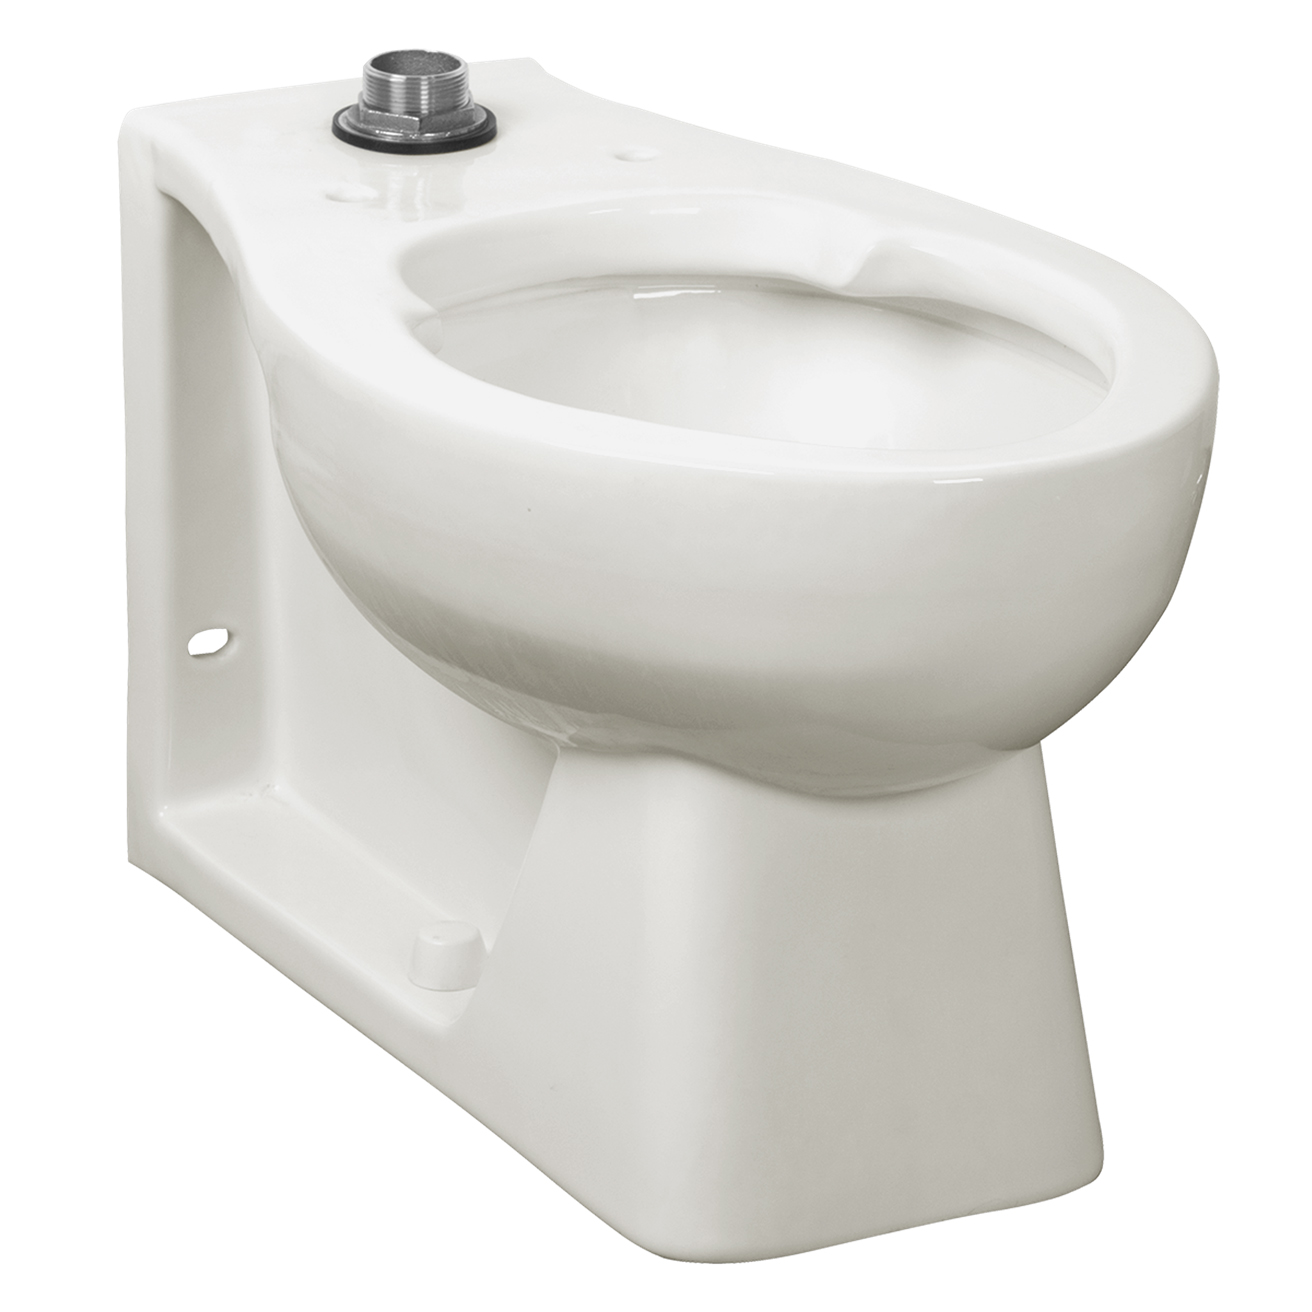 Huron 17-1/8" Universal Toilet Bowl w/EverClean in White